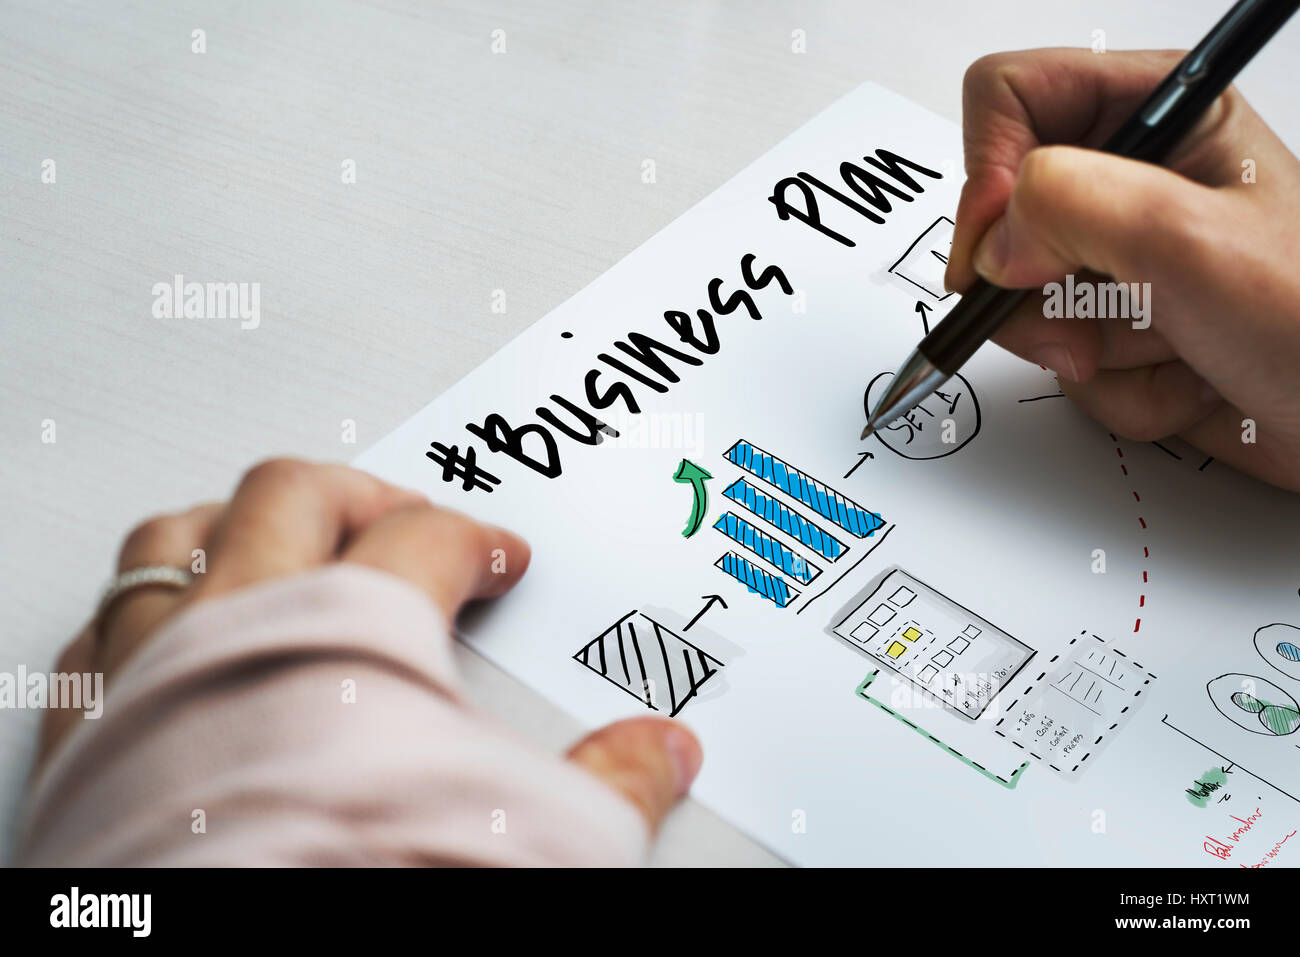 Business Plan Flussdiagramm Zeichnung Skizze Stockfoto